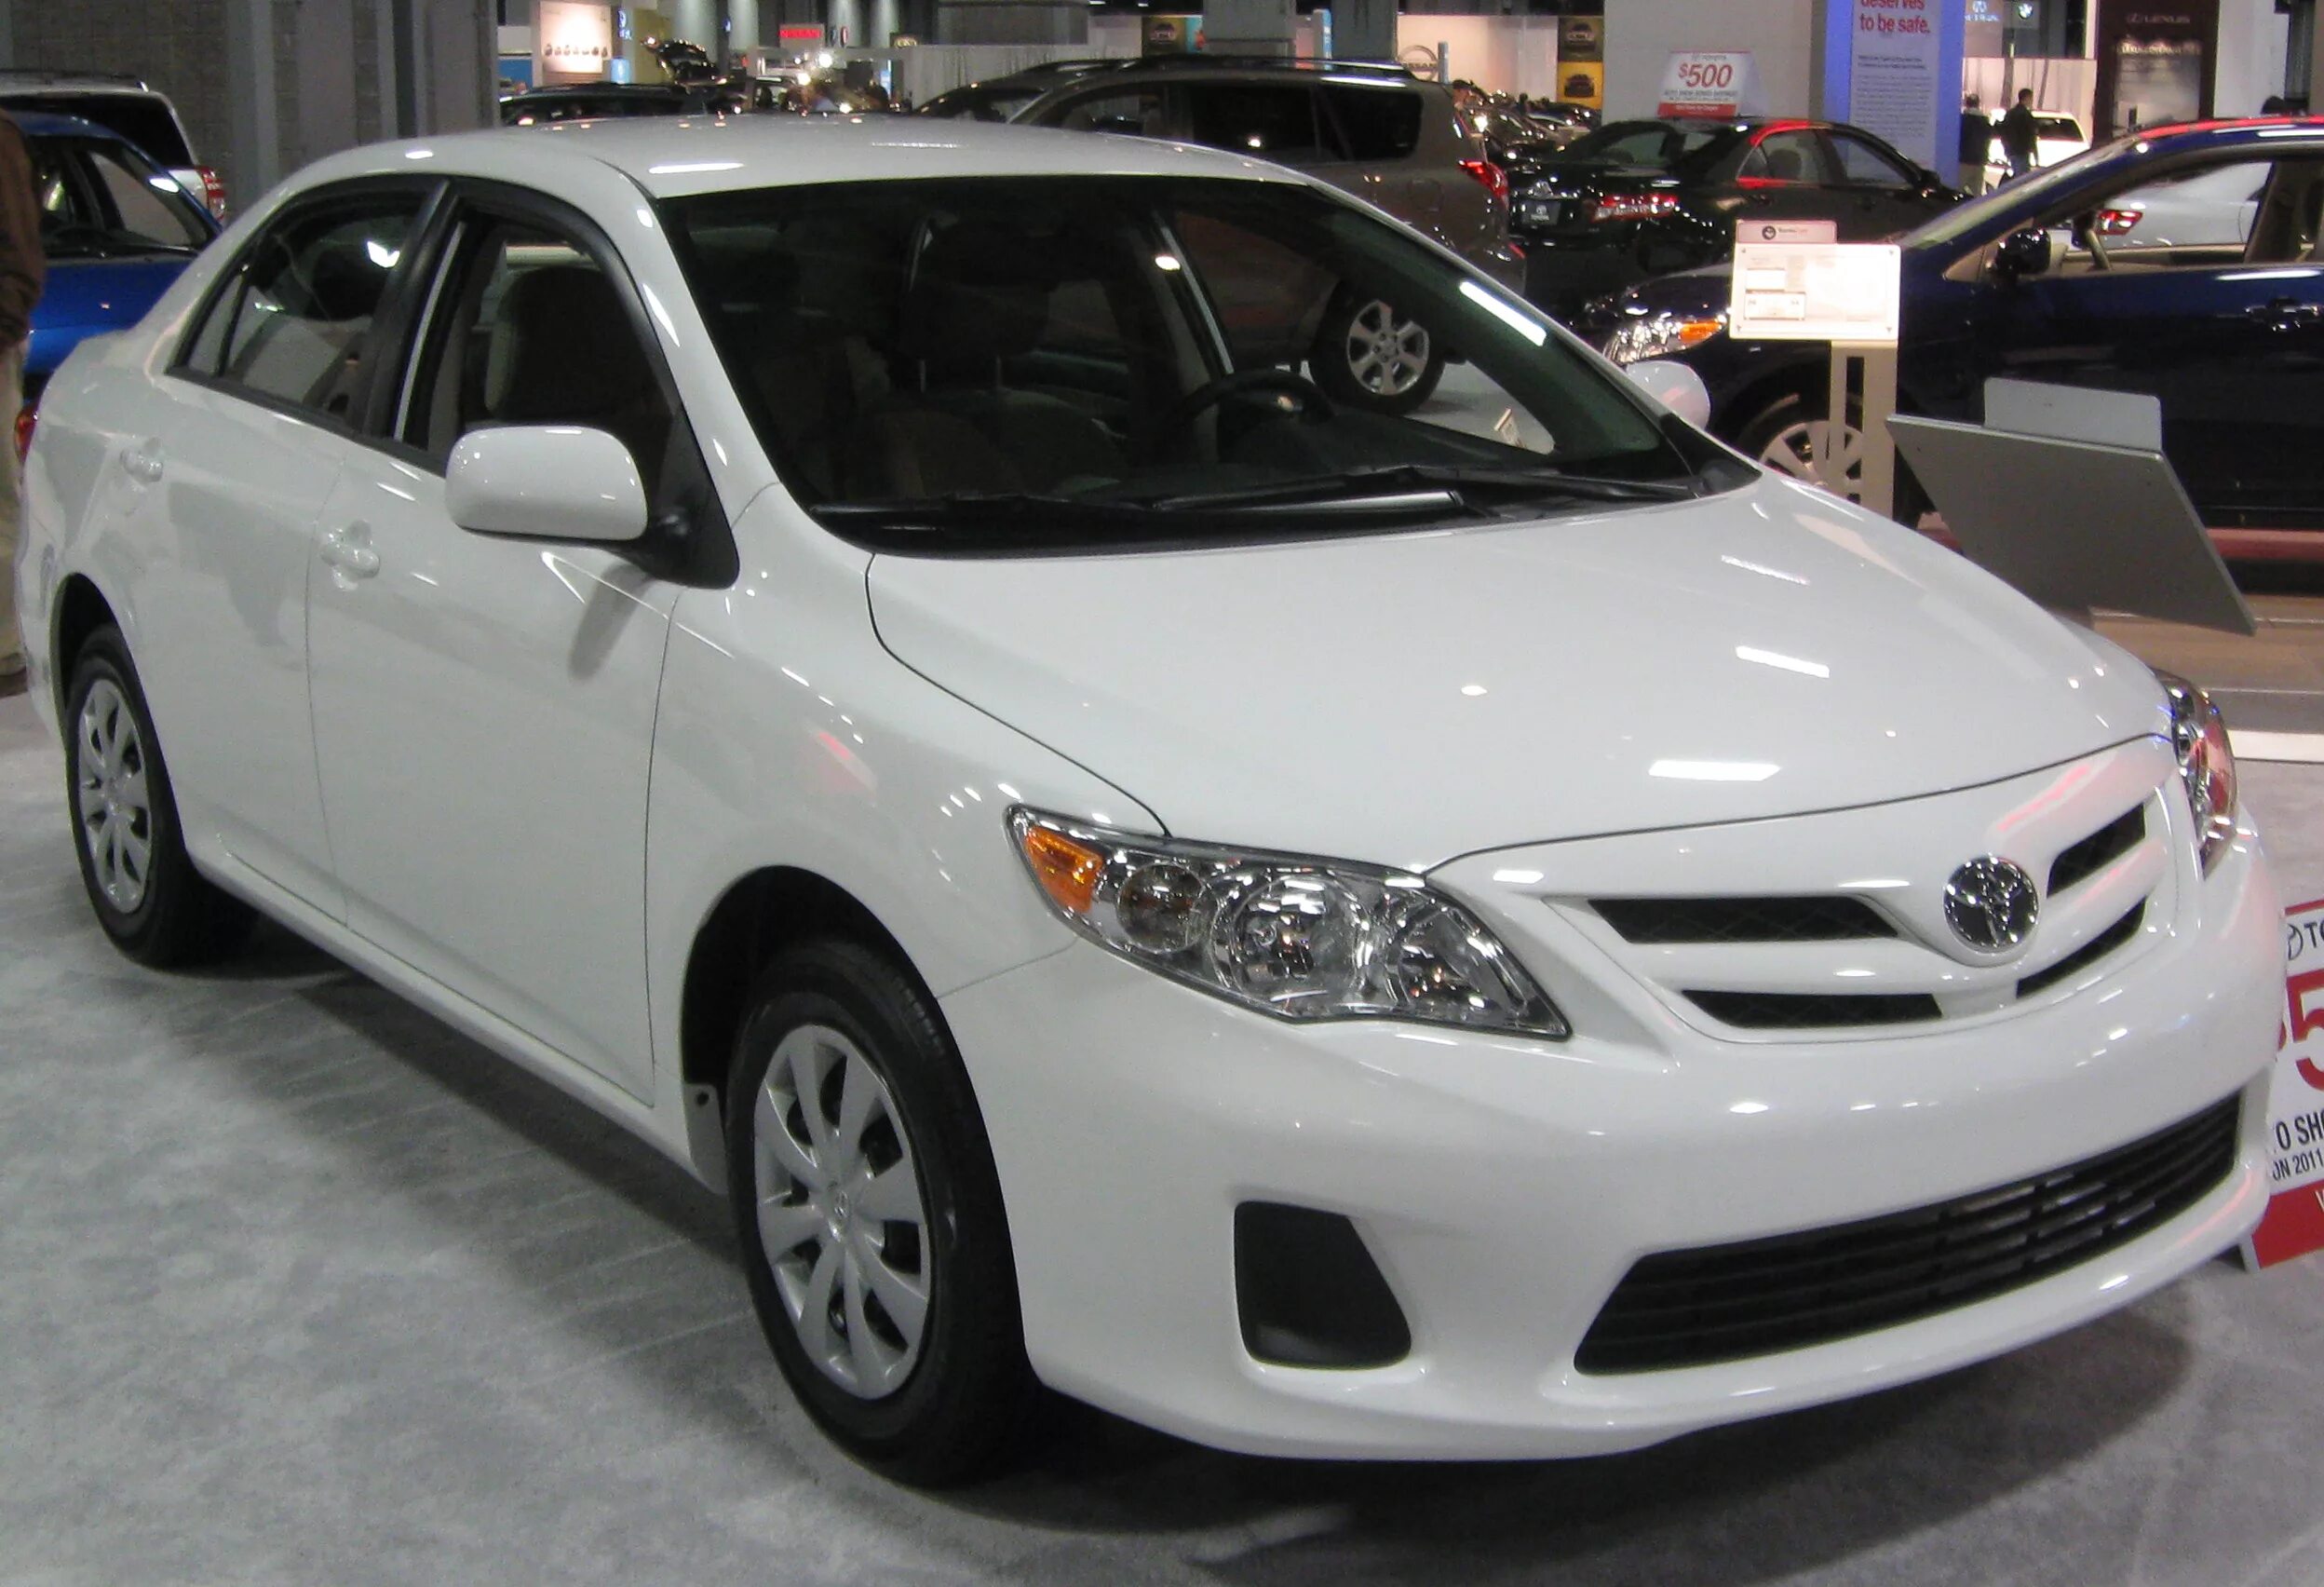 Toyota Corolla 2011. Тойота Corolla 2011. Тойота Королла 2011 года. Toyota Corolla s 2011.